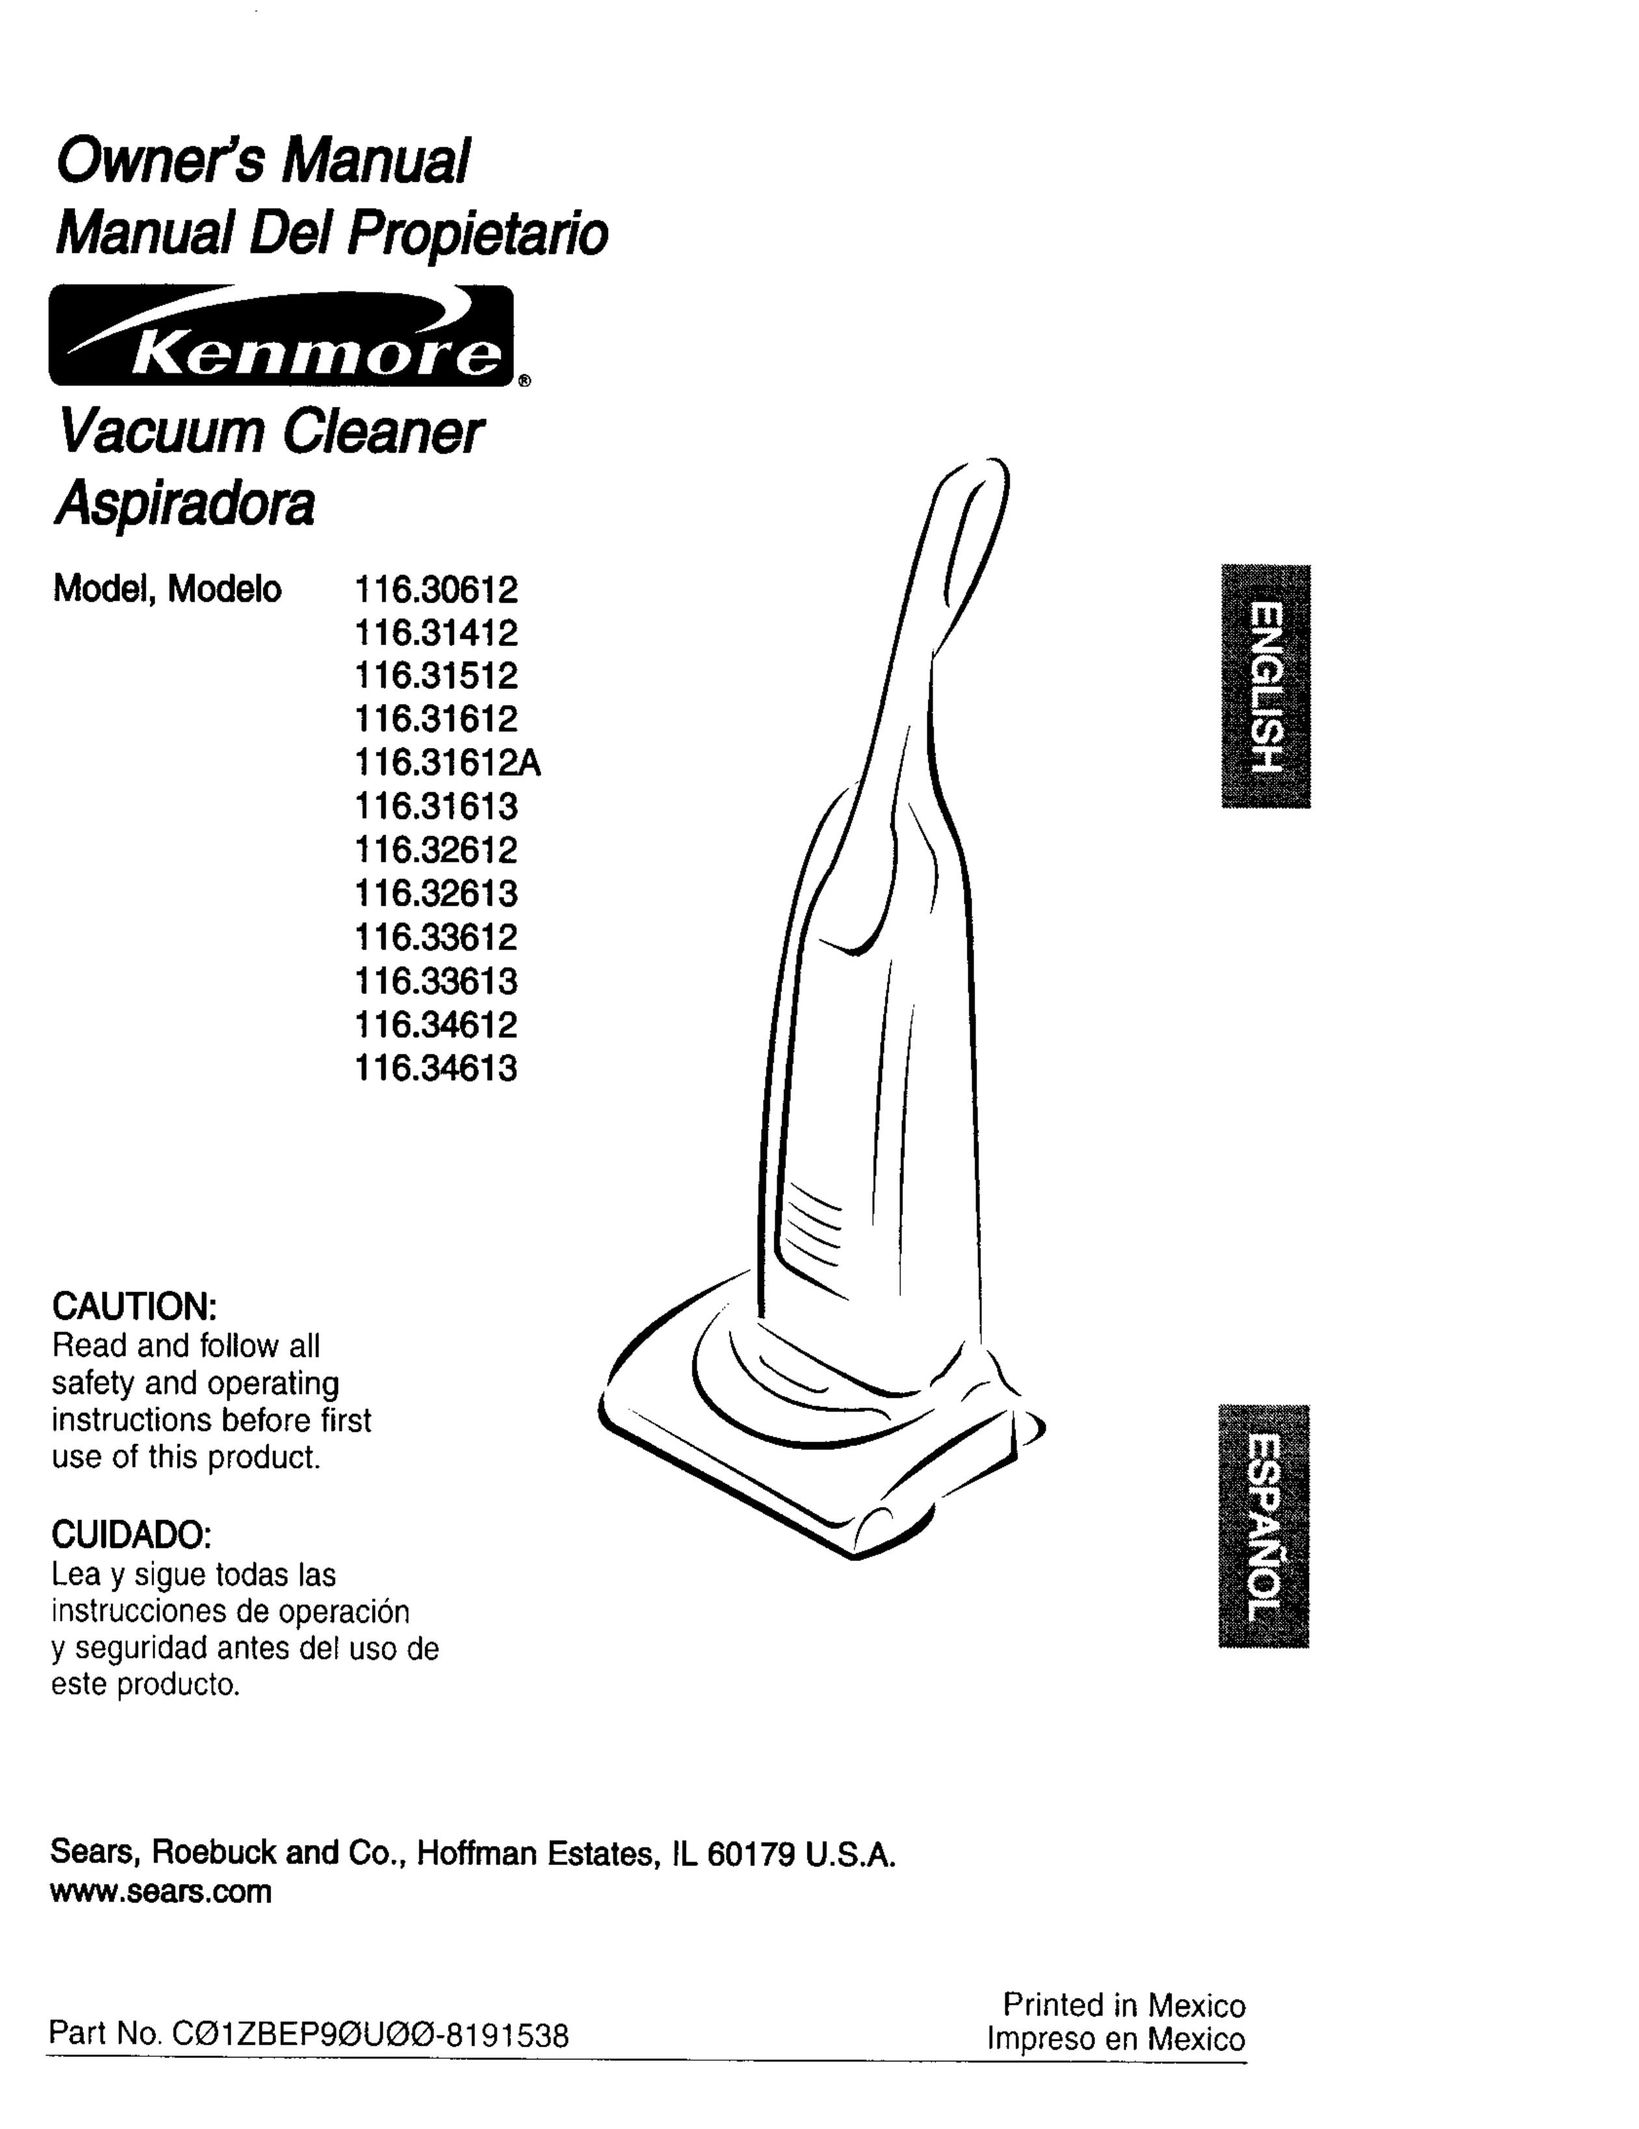 Kenmore 116.31512 Vacuum Cleaner User Manual